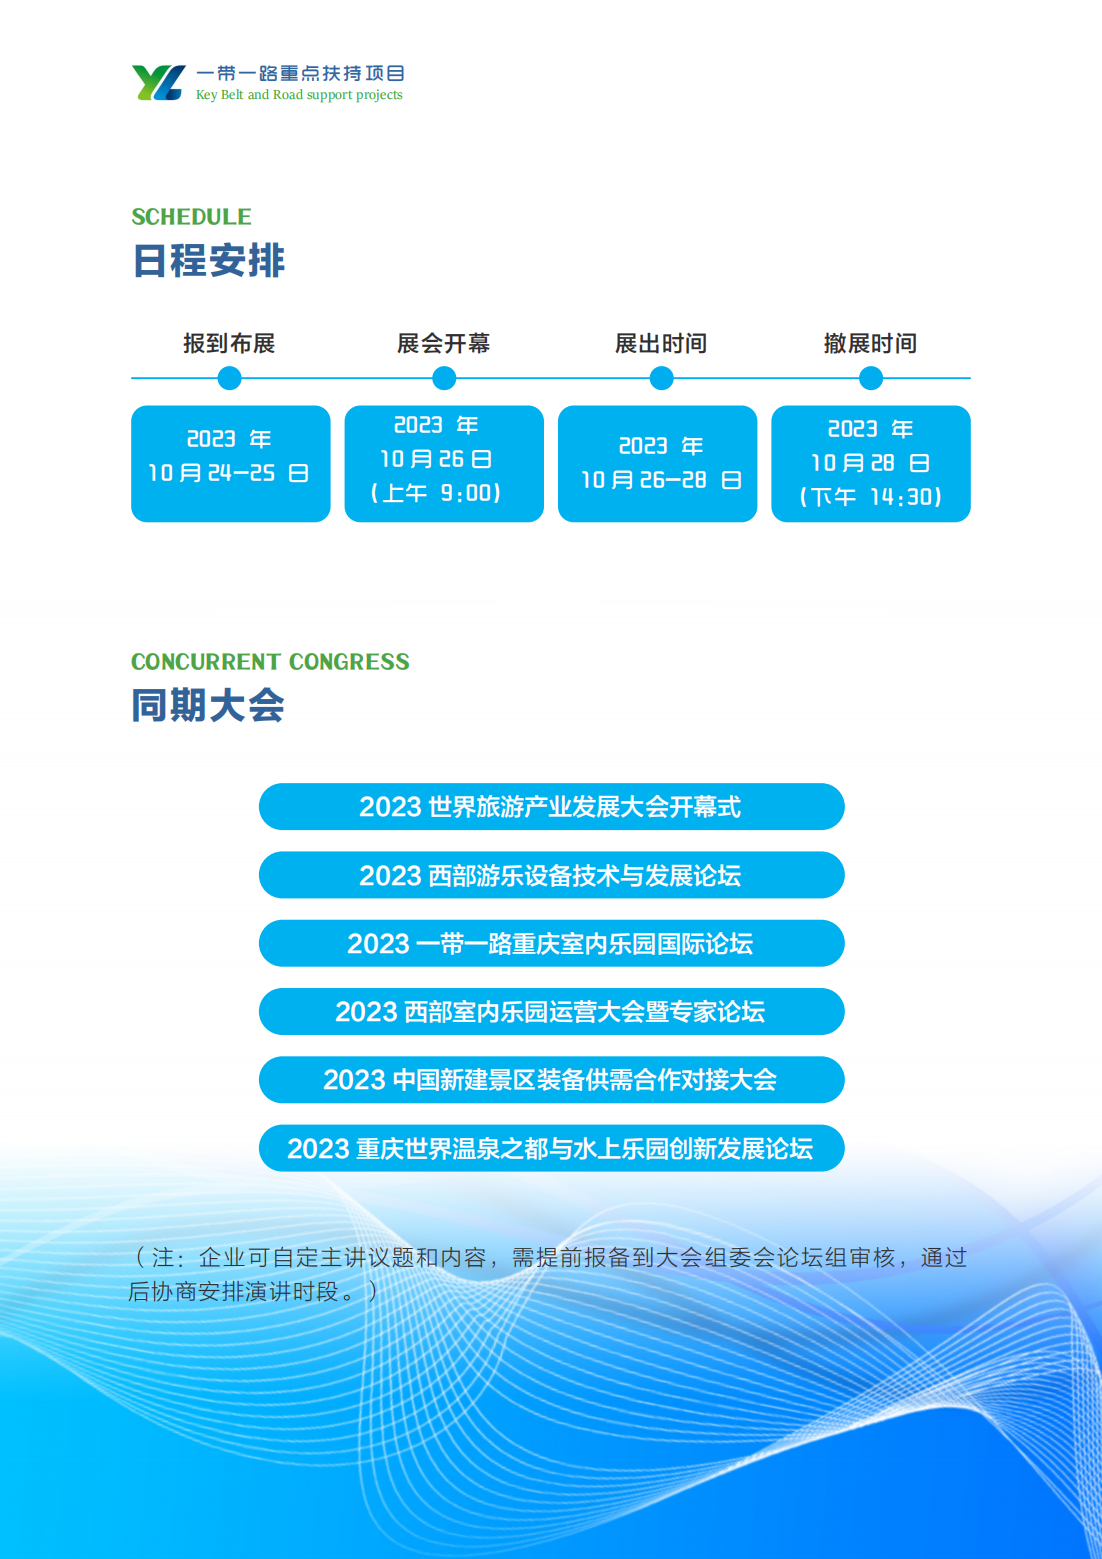 2023*20届亚太重庆智慧零售大会暨商业智能设备产业博览会